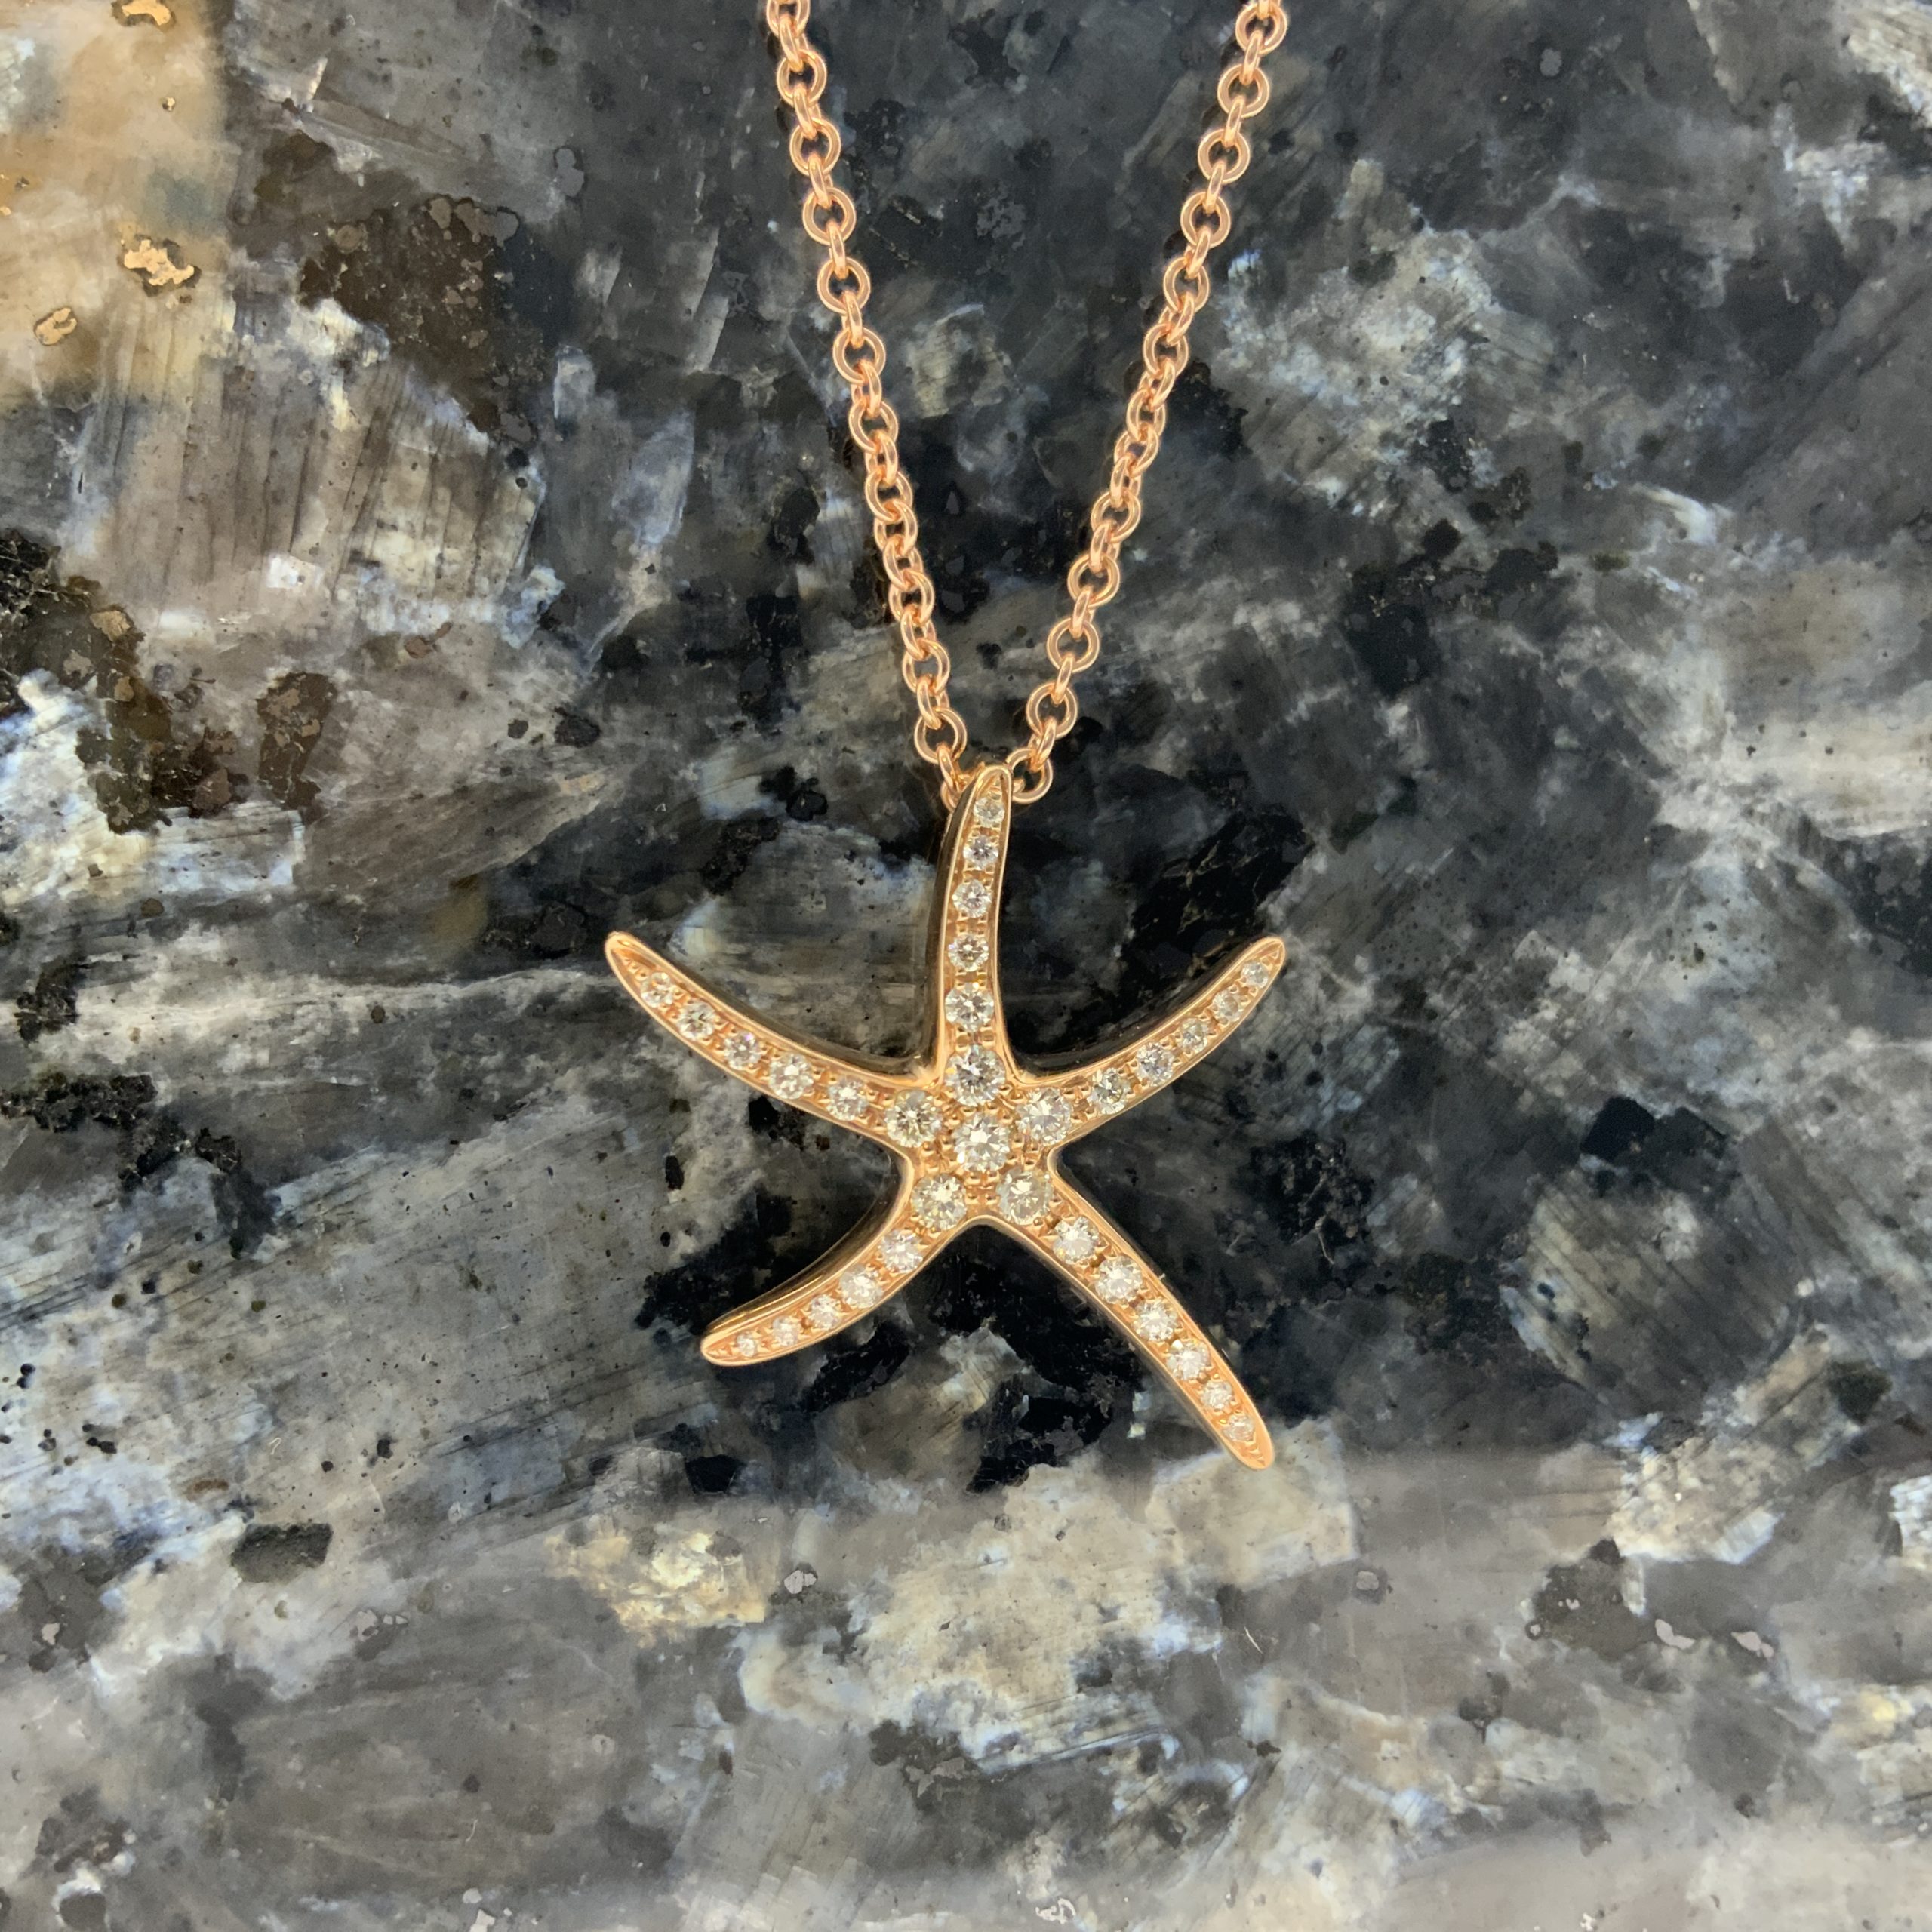 Nautical Jewelry White Gold Starfish Pendant PESL46 - Churchwell's Jewelers